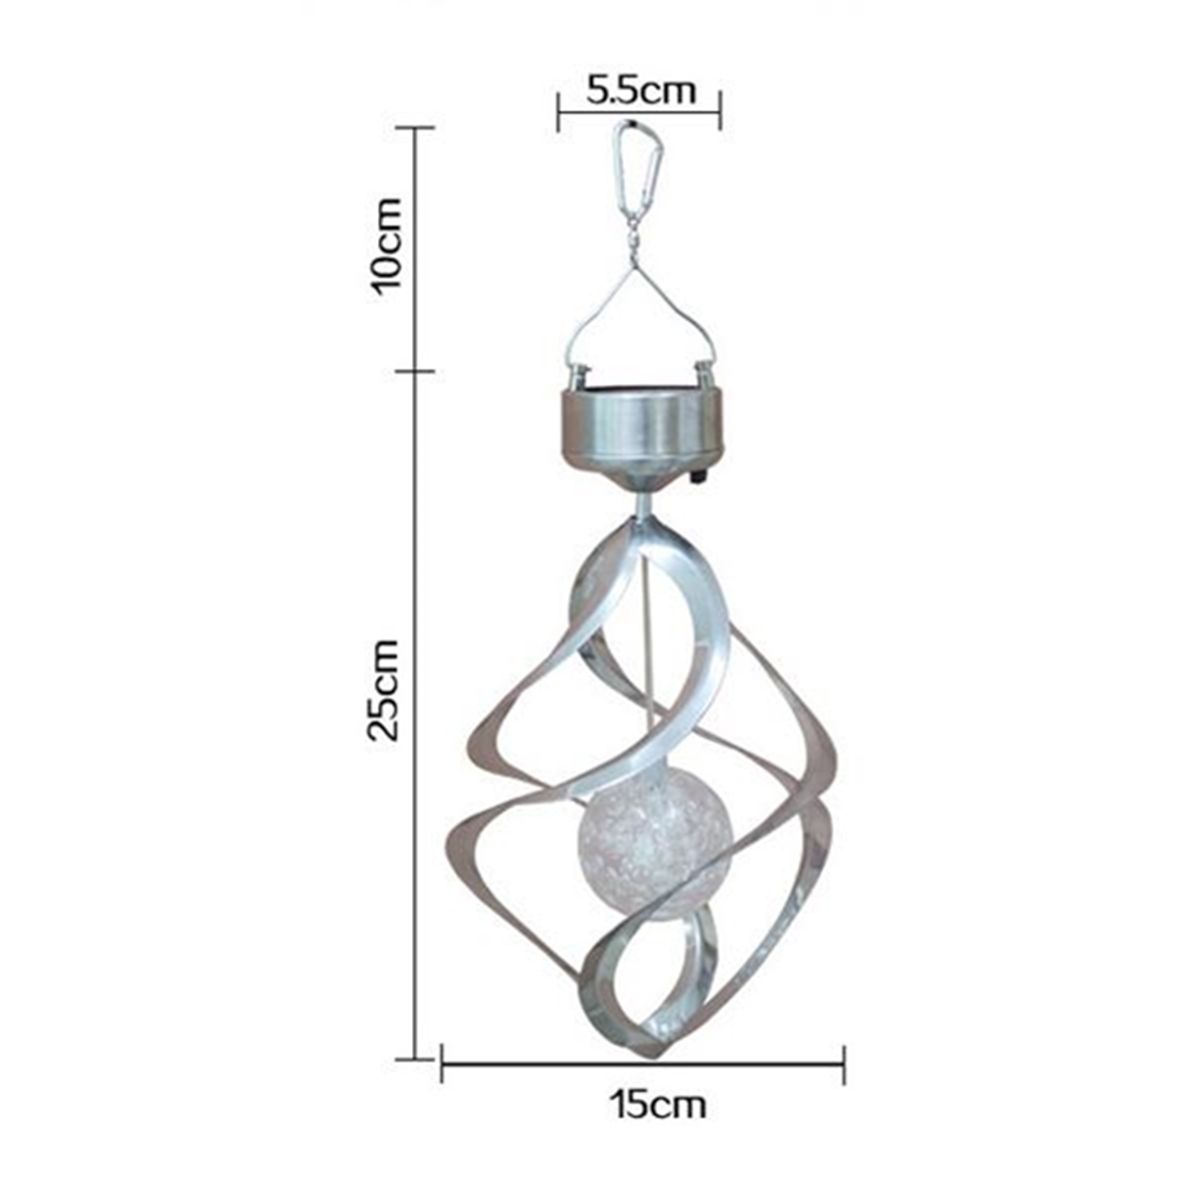 LED-Solar-Power-Wind-Chime-Spinner-Light-Outdoor-Hanging--Lamp-for-Home-Garden-Decor-1677252